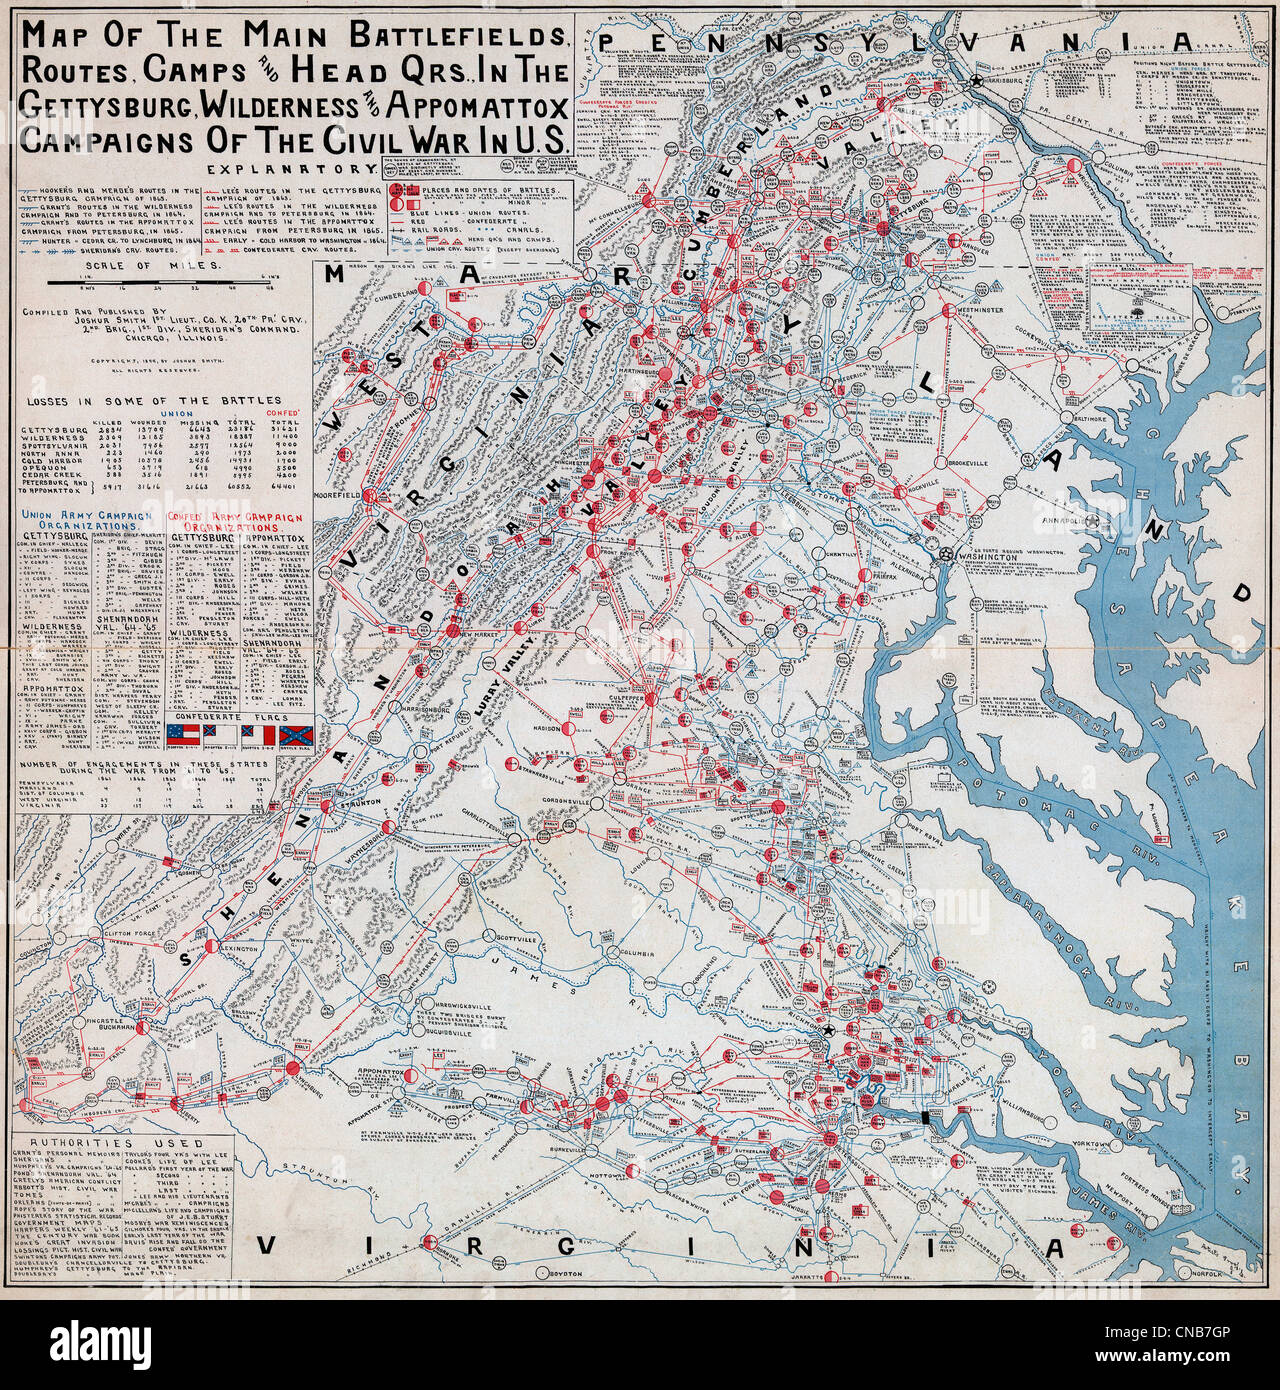 Gettysburg Battlefield Campground Map